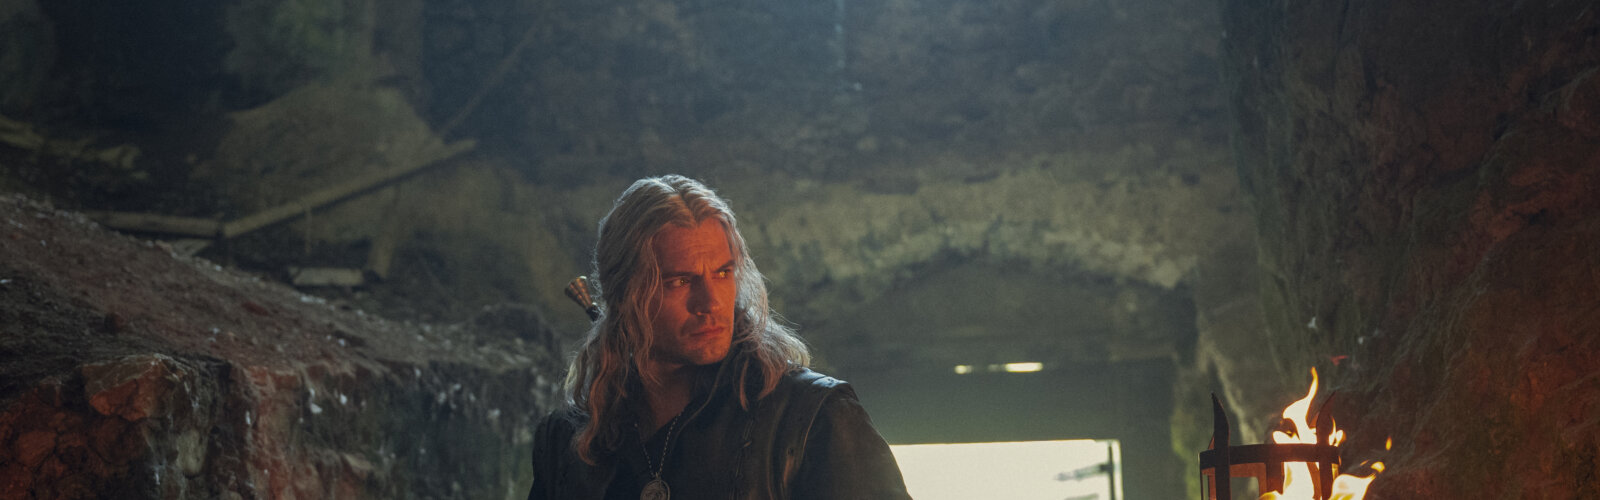 Henry Cavill als Geralt von Riva in der dritten Staffel von The Witcher.